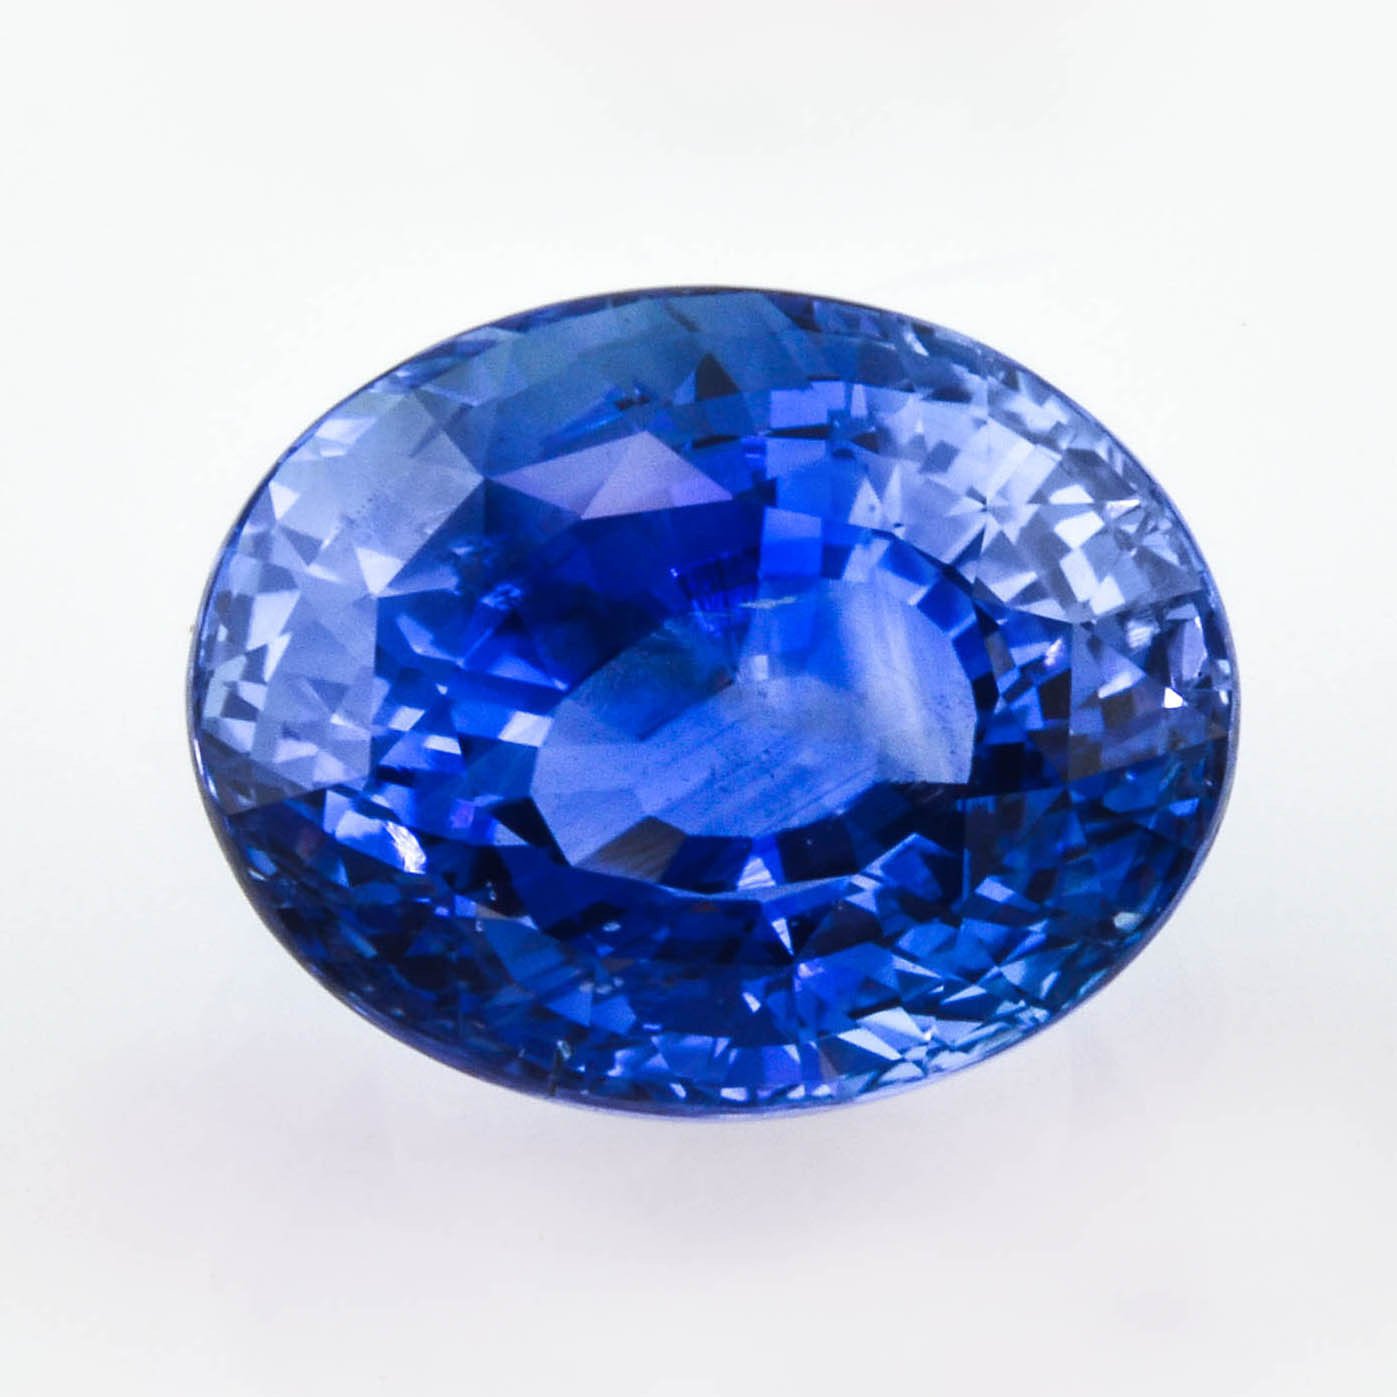 “厄运之石”——44克拉的“希望”蓝钻